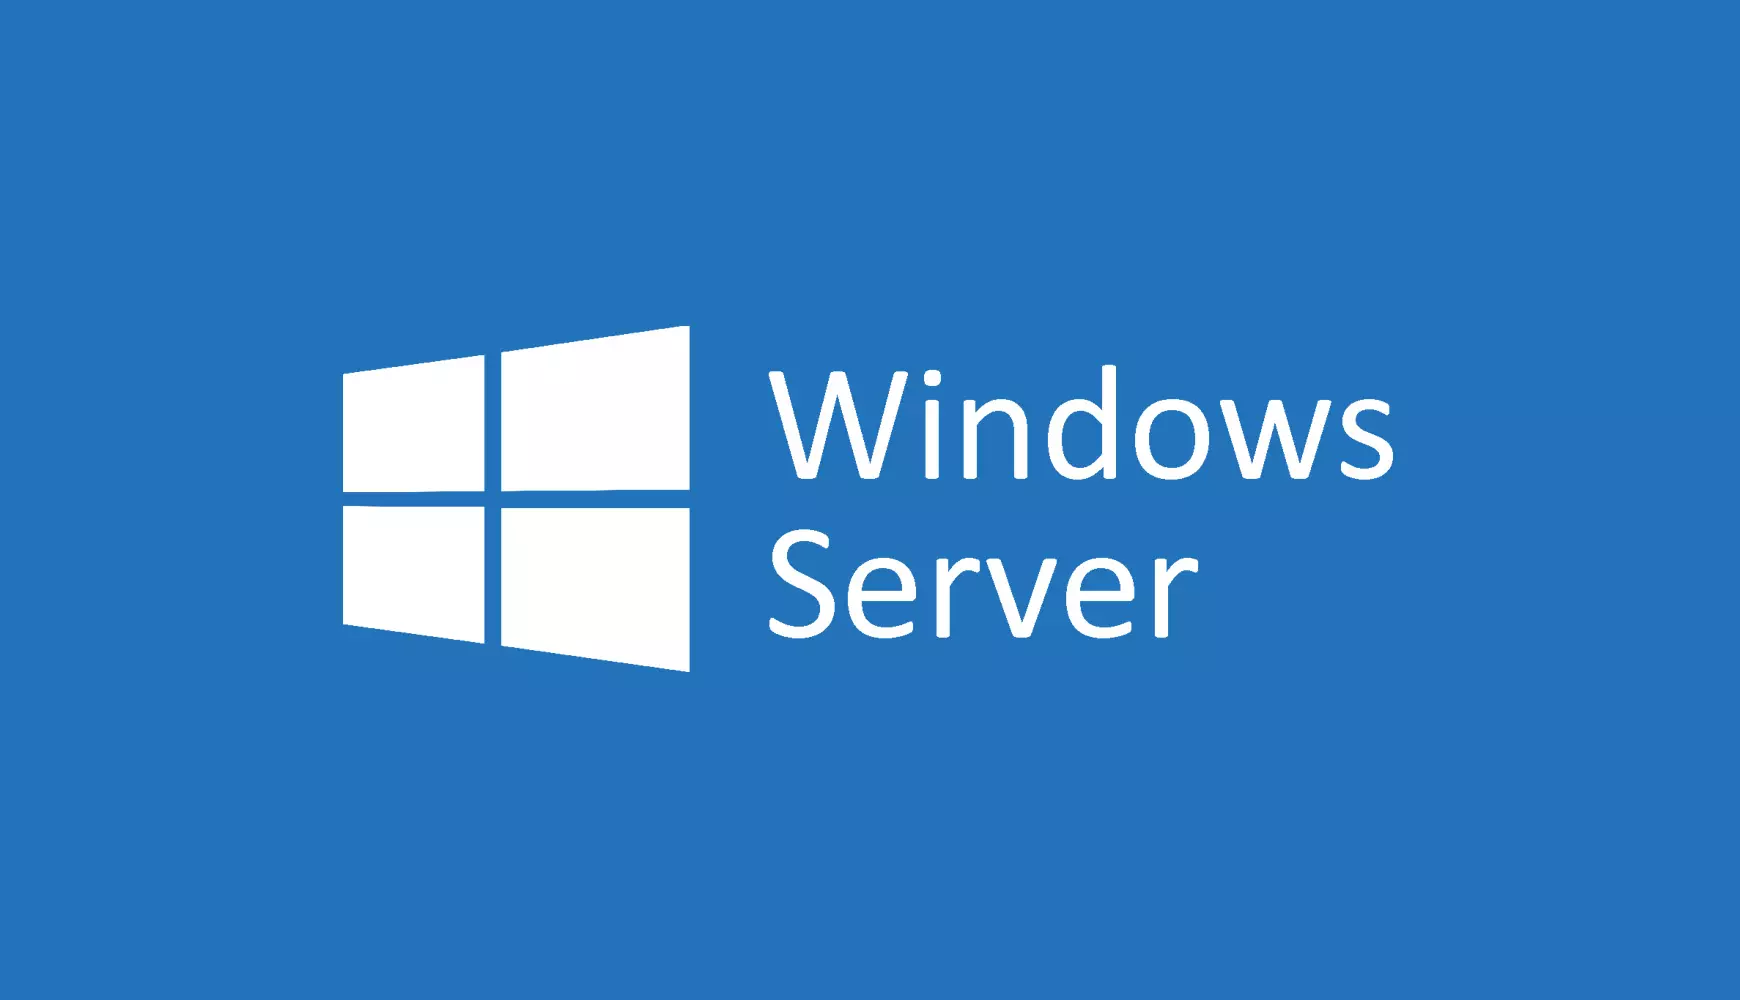 Microsoft lança atualizações de emergência e corrige problemas graves no Windows Server